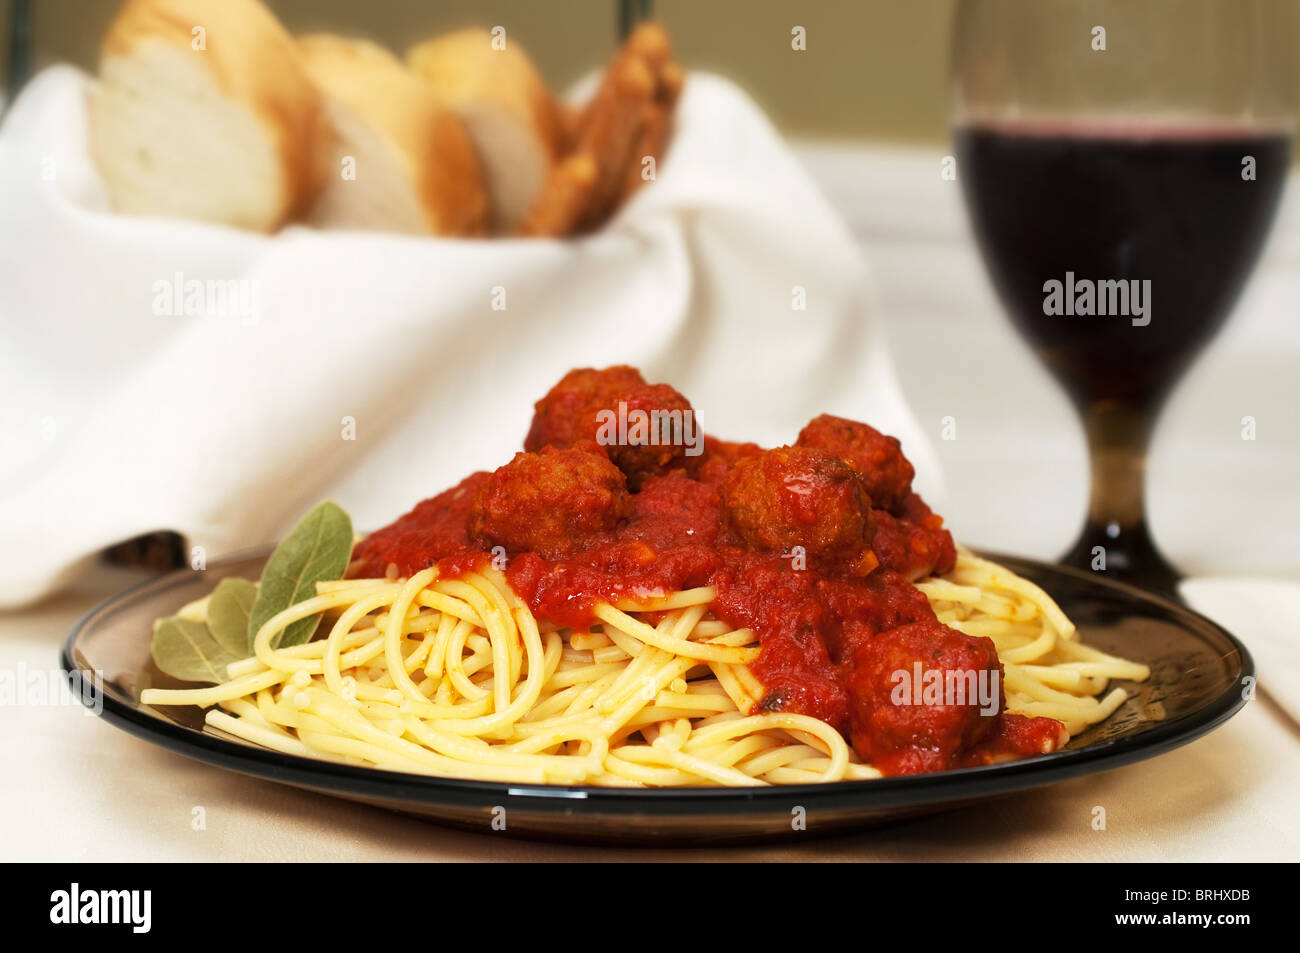 Spaghetti und Fleischbällchen Abendessen mit Rotwein, Knoblauchbrot und Brot-Sticks. Stockfoto